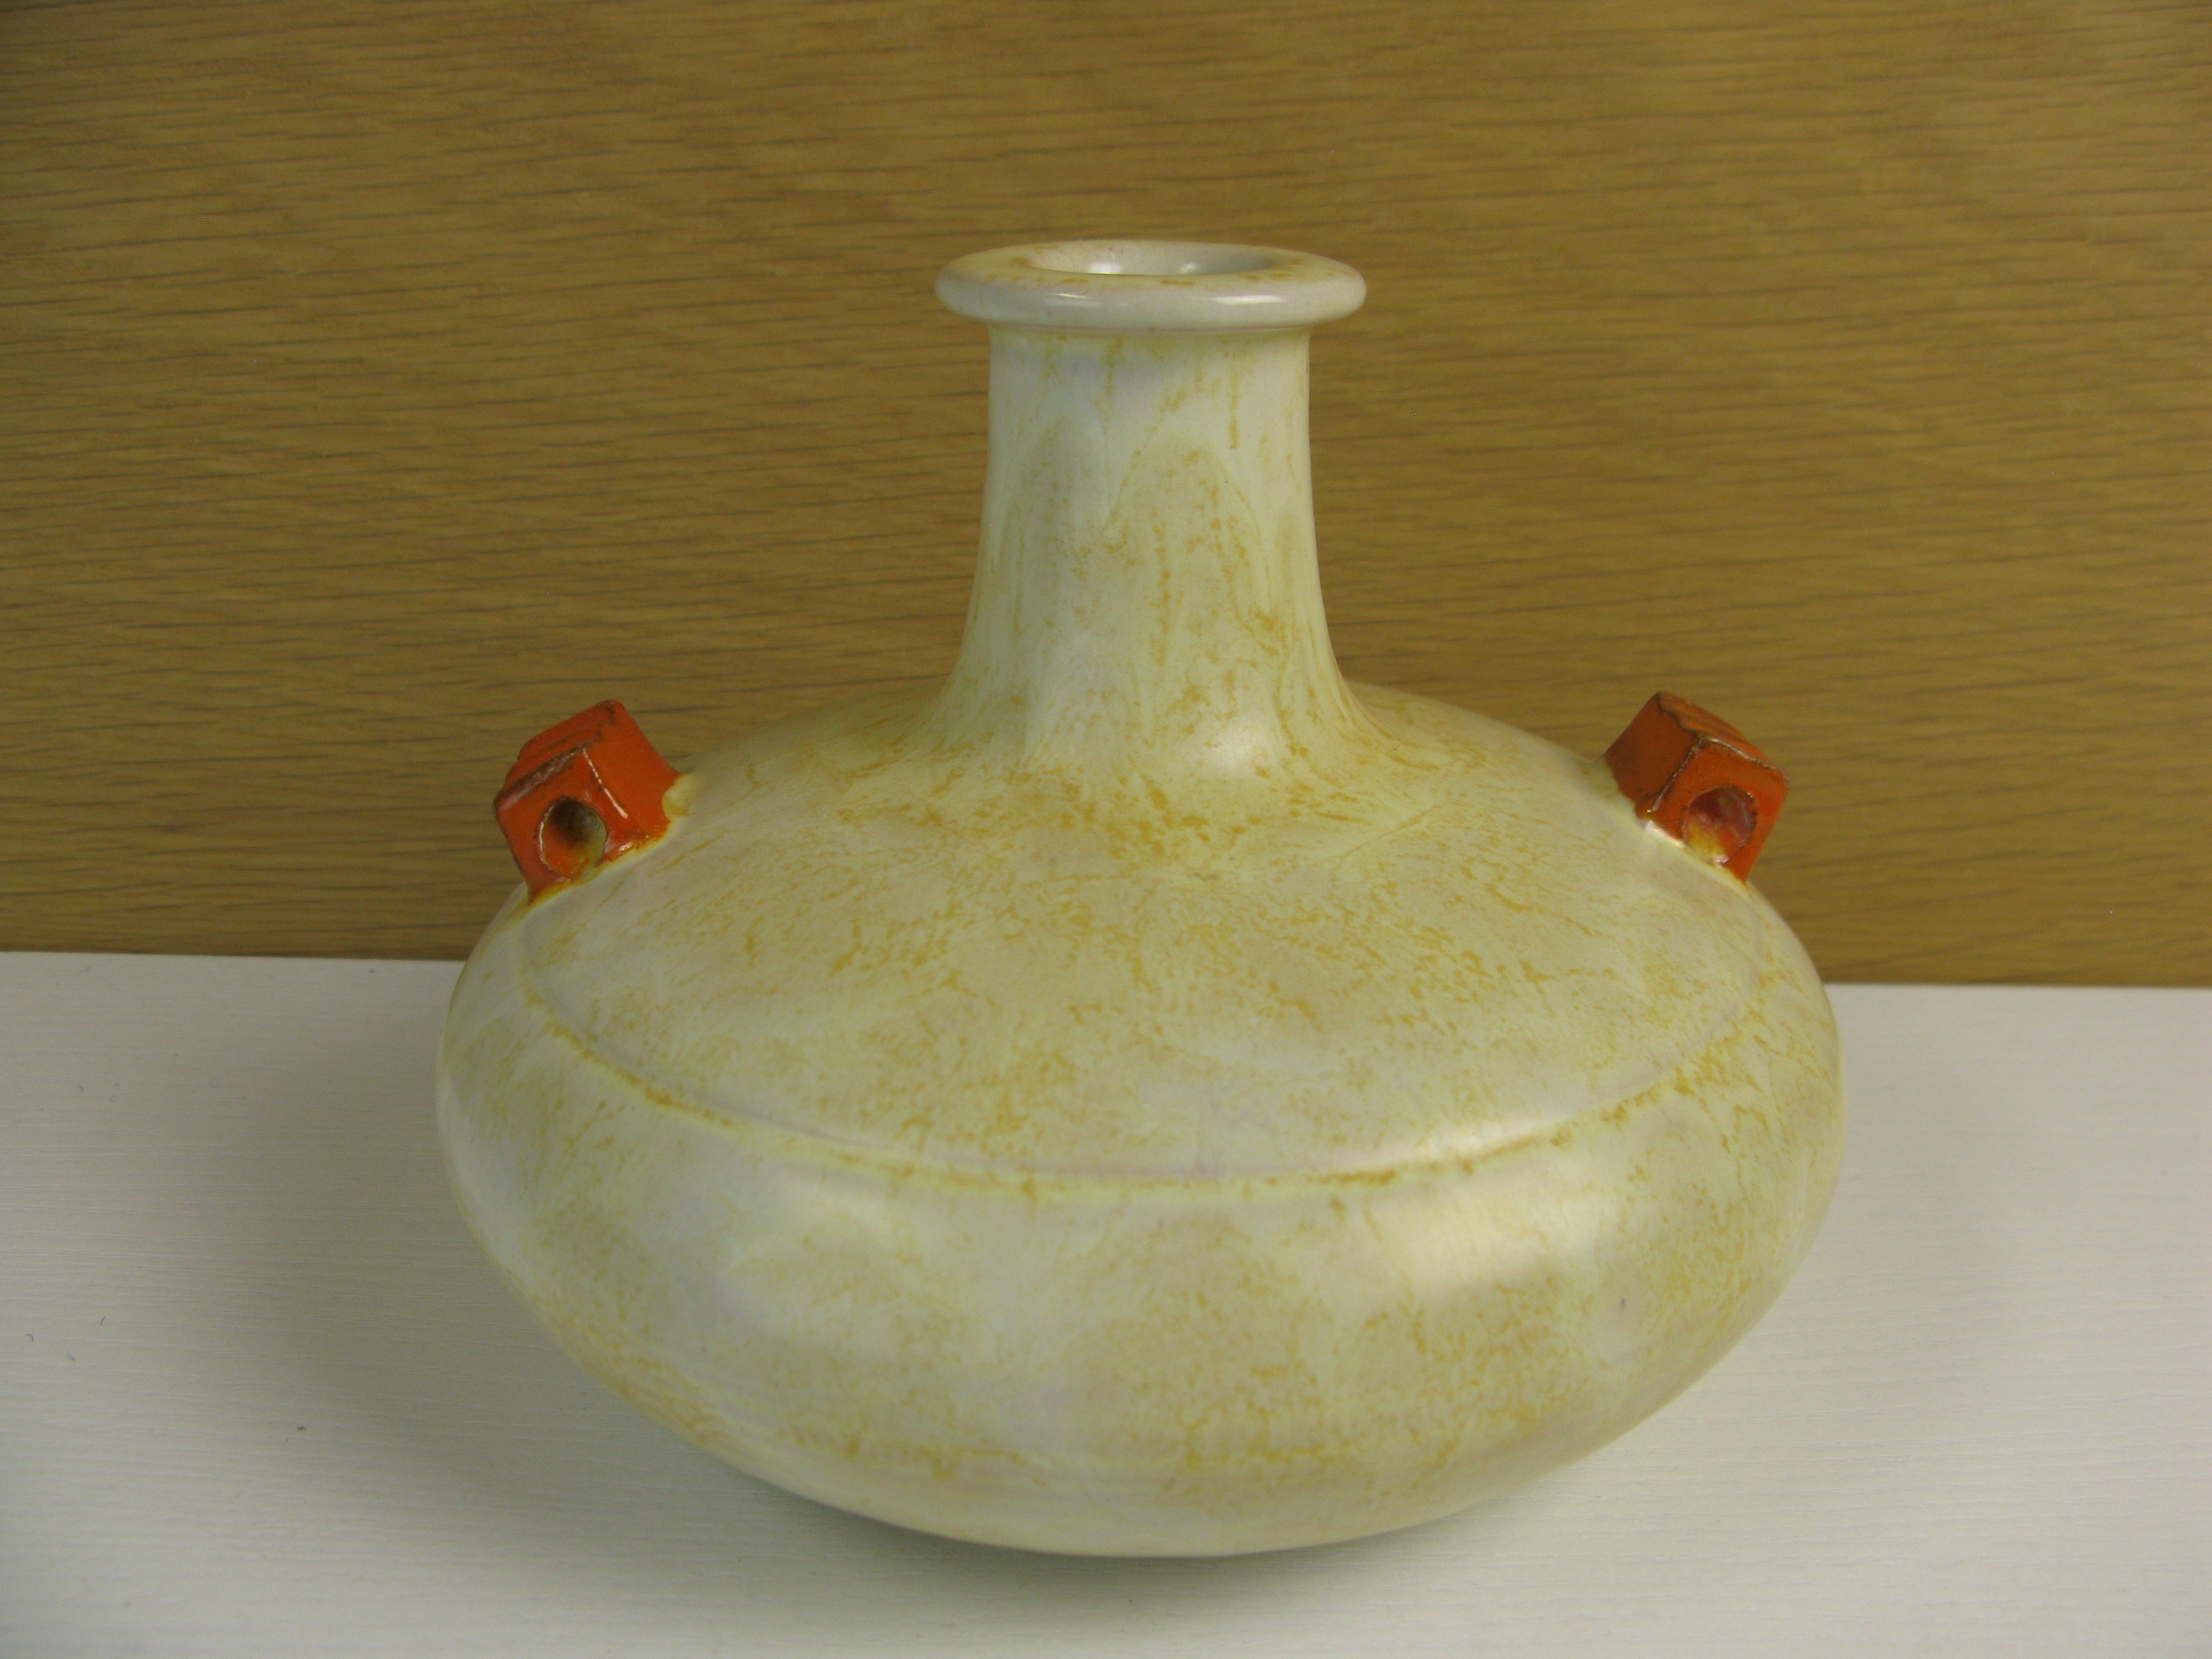 yelowish/orange vase 3111